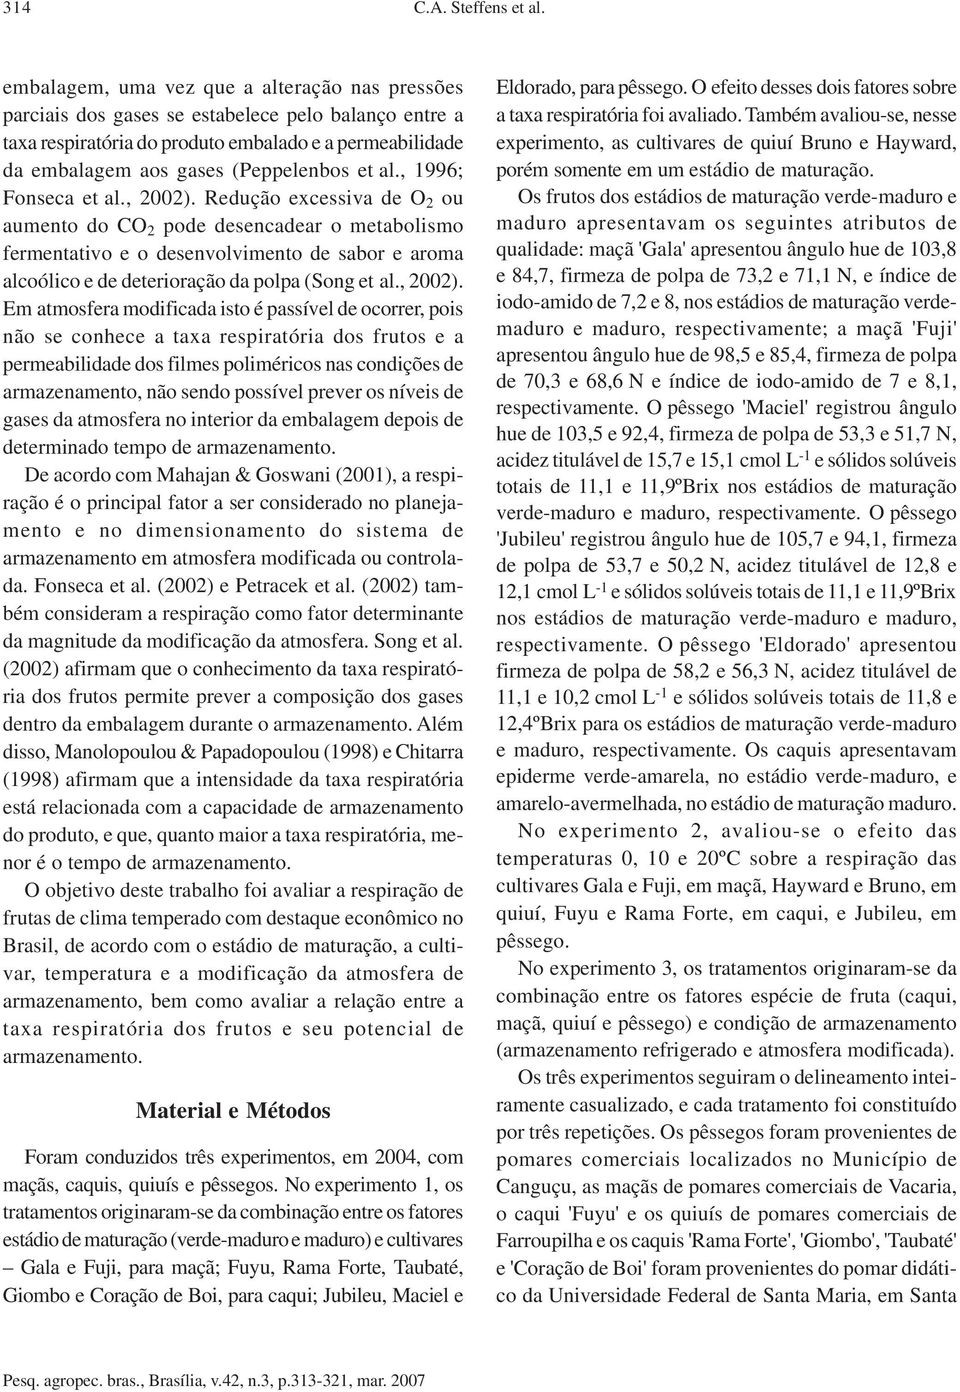 al., 1996; Fonseca et al., 2002).